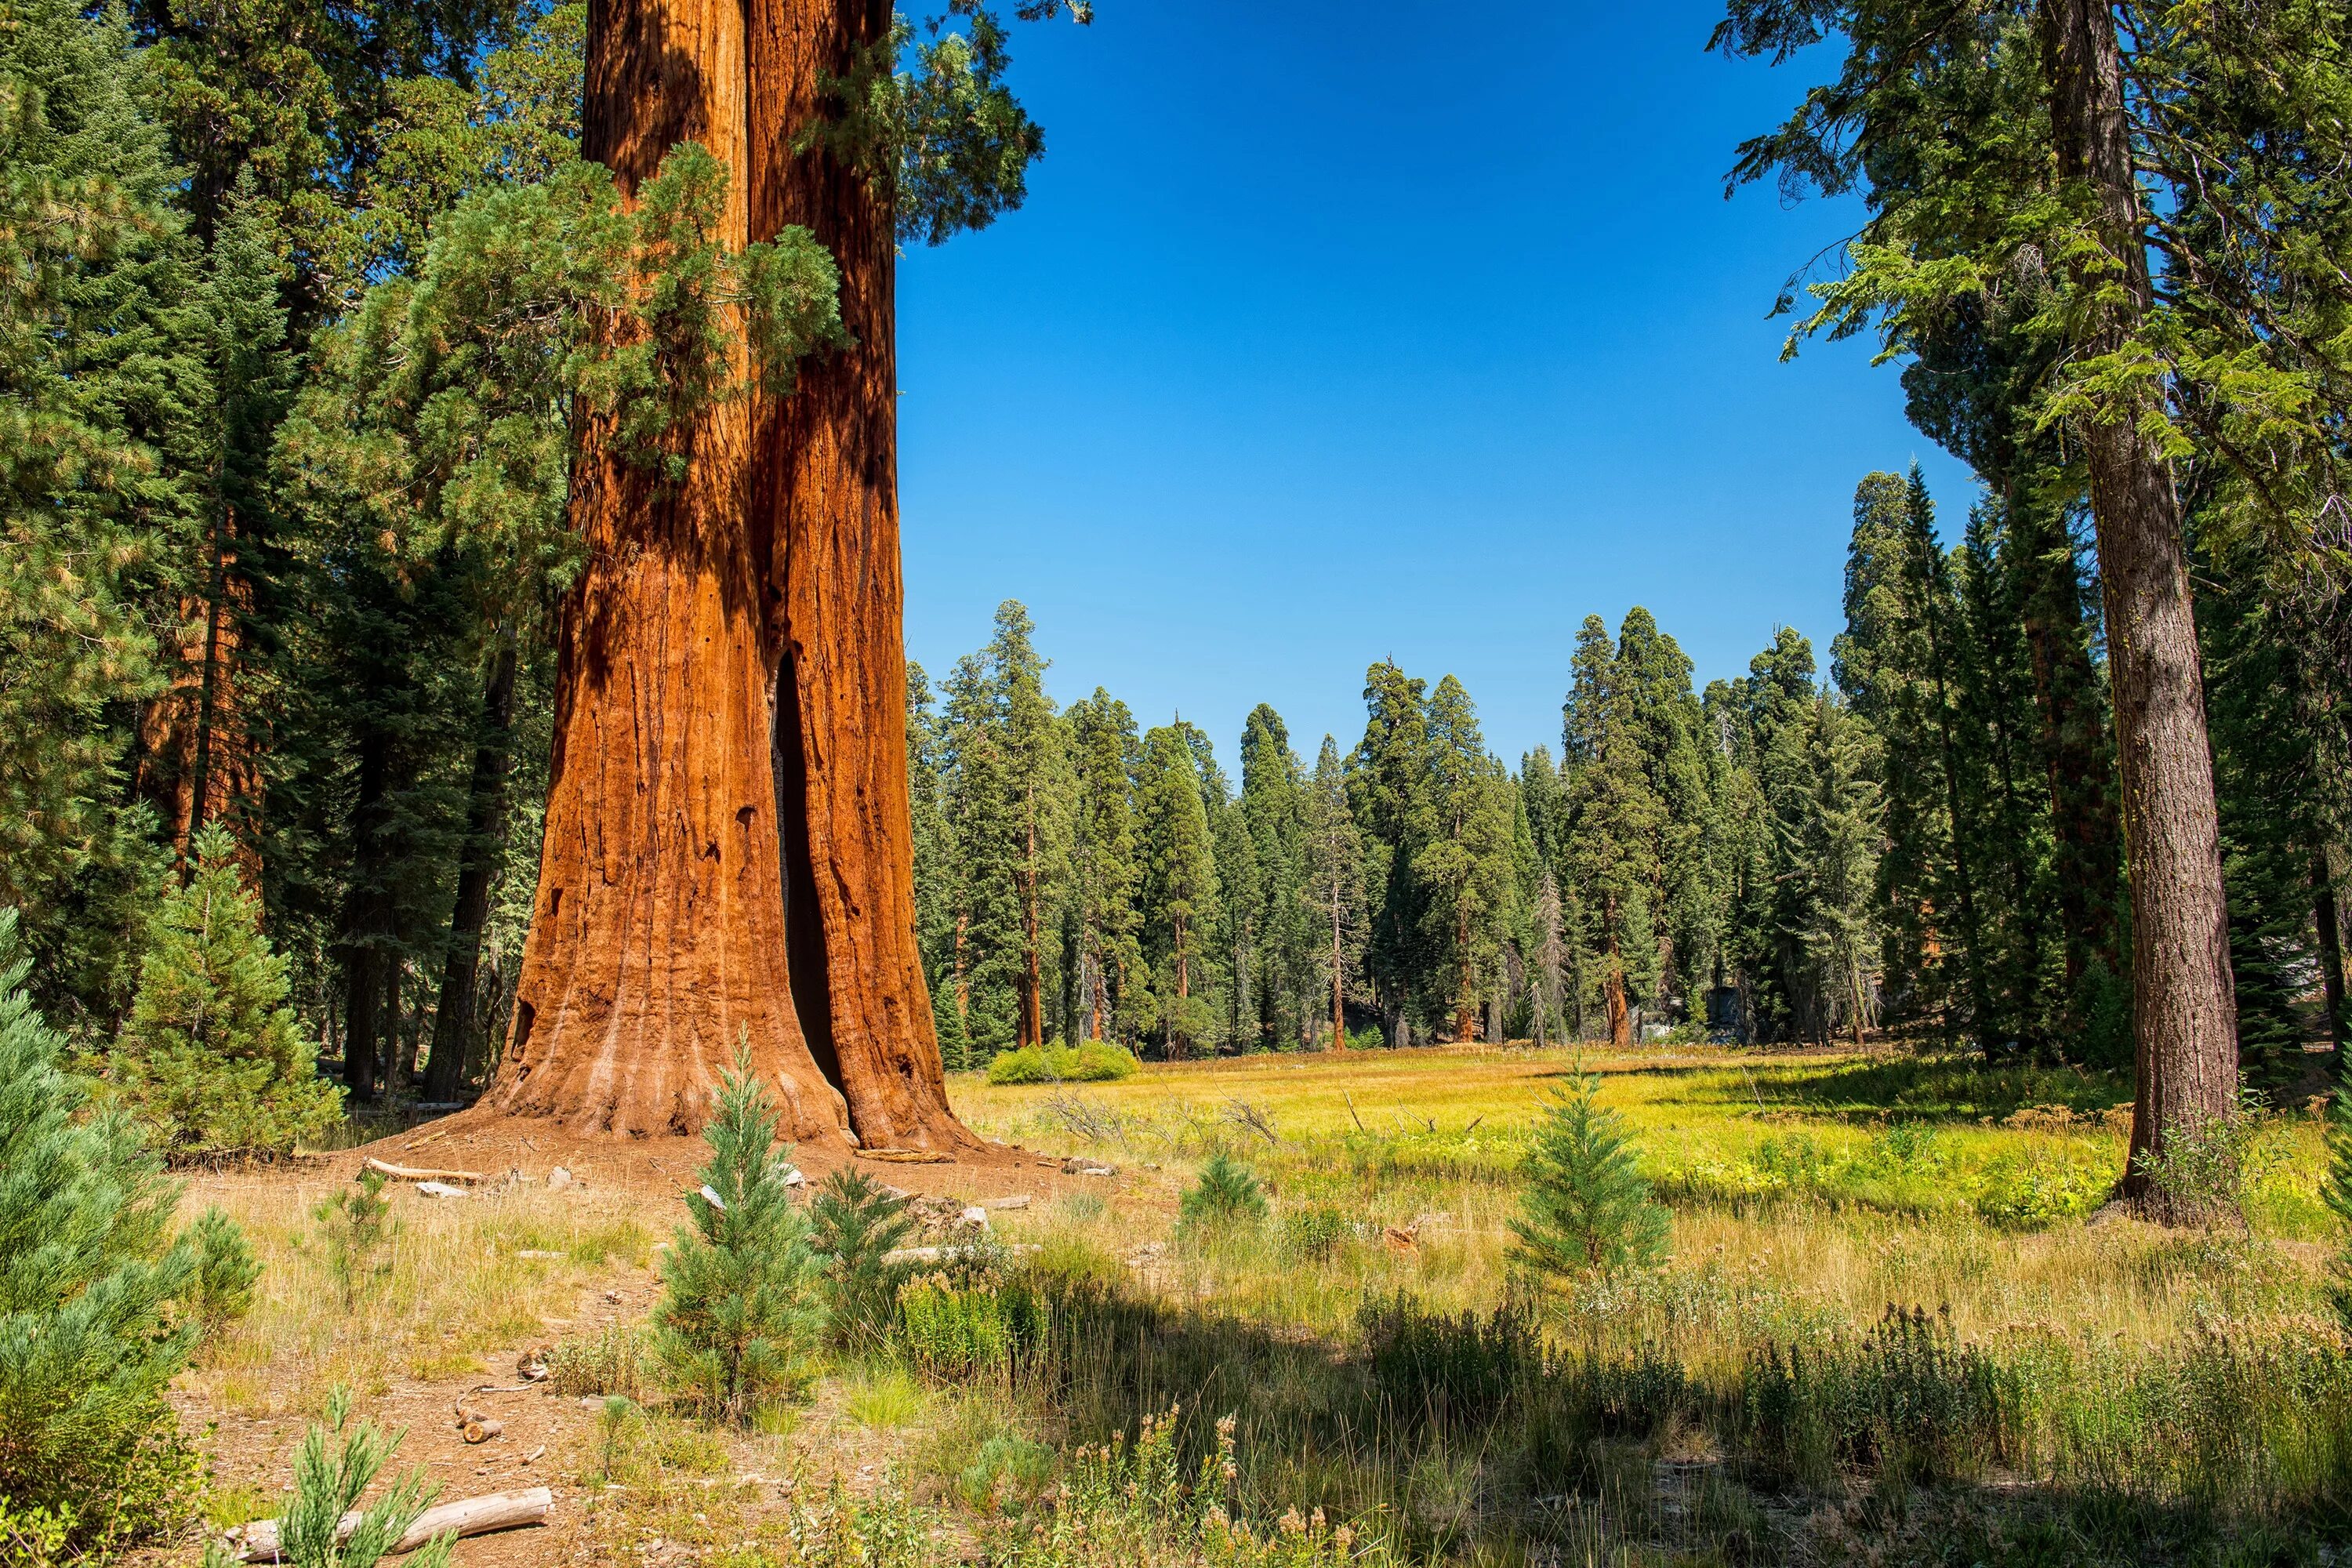 Огромные стволы деревьев. Национальный парк Секвойя США. Парк Секвойя Калифорния. Секвойя дерево. Лес с секвойями в США.